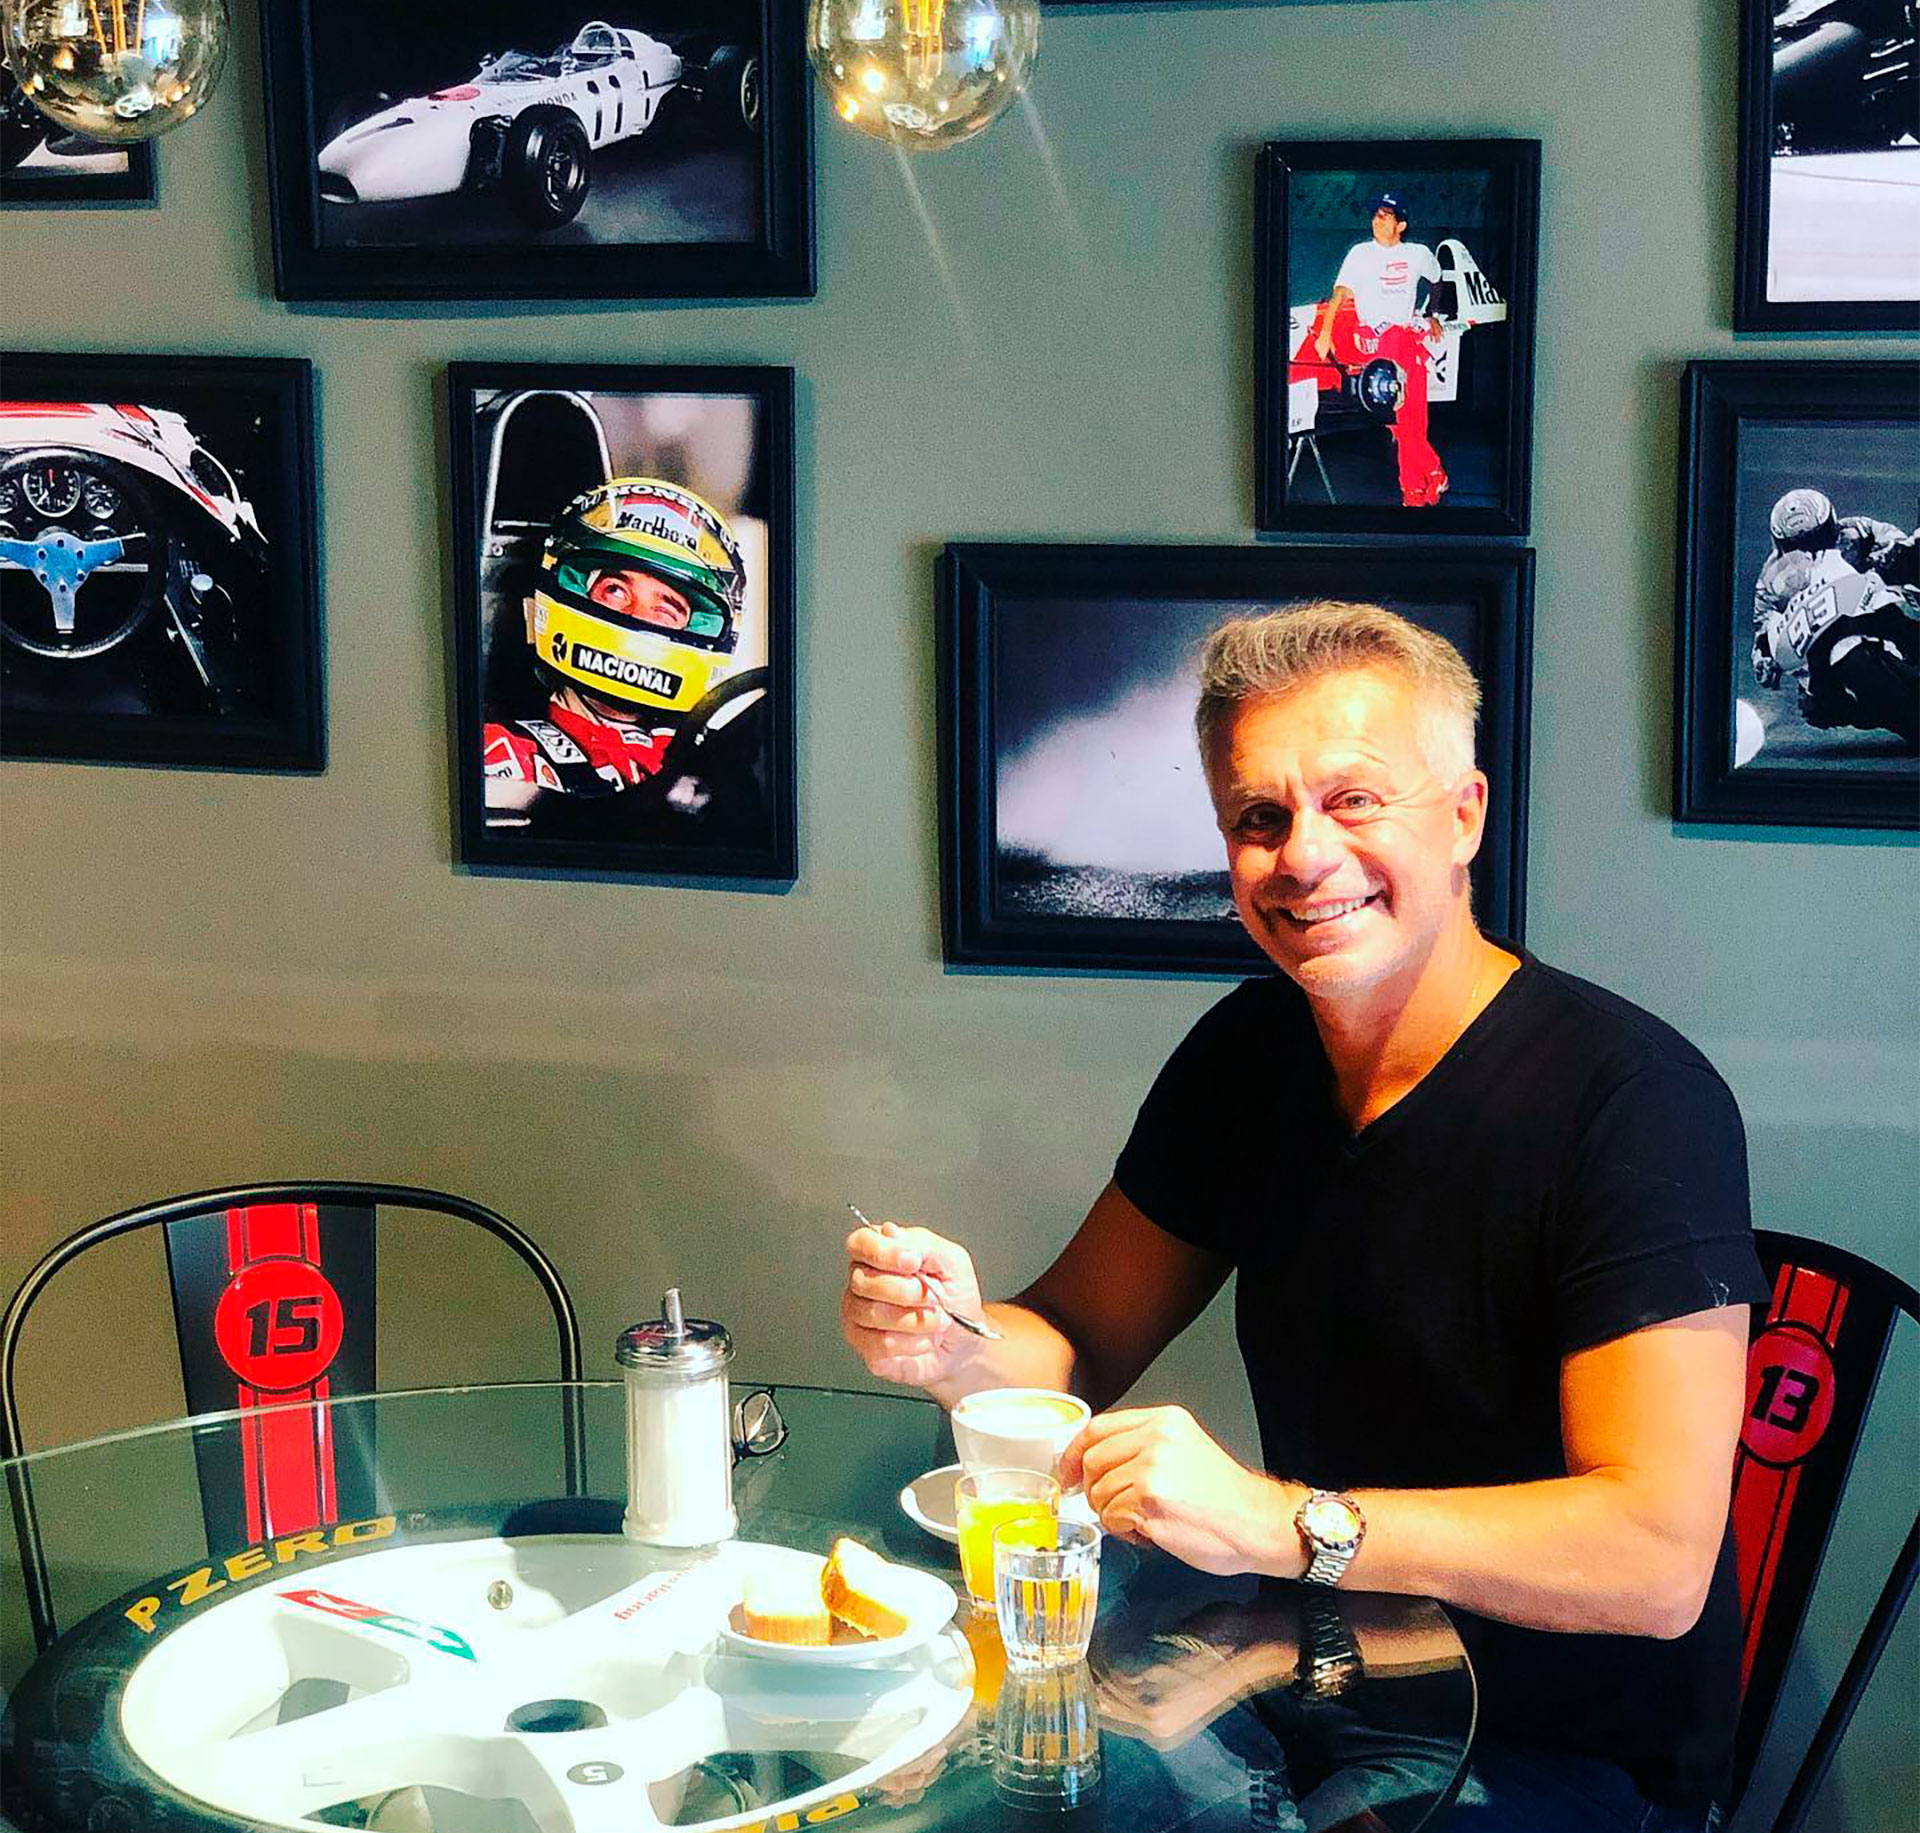 Rosso disfrutando de un café en su bar temático de automovilismo. En la pared se advierten dos cuadros de Senna (@rossovictorruben)